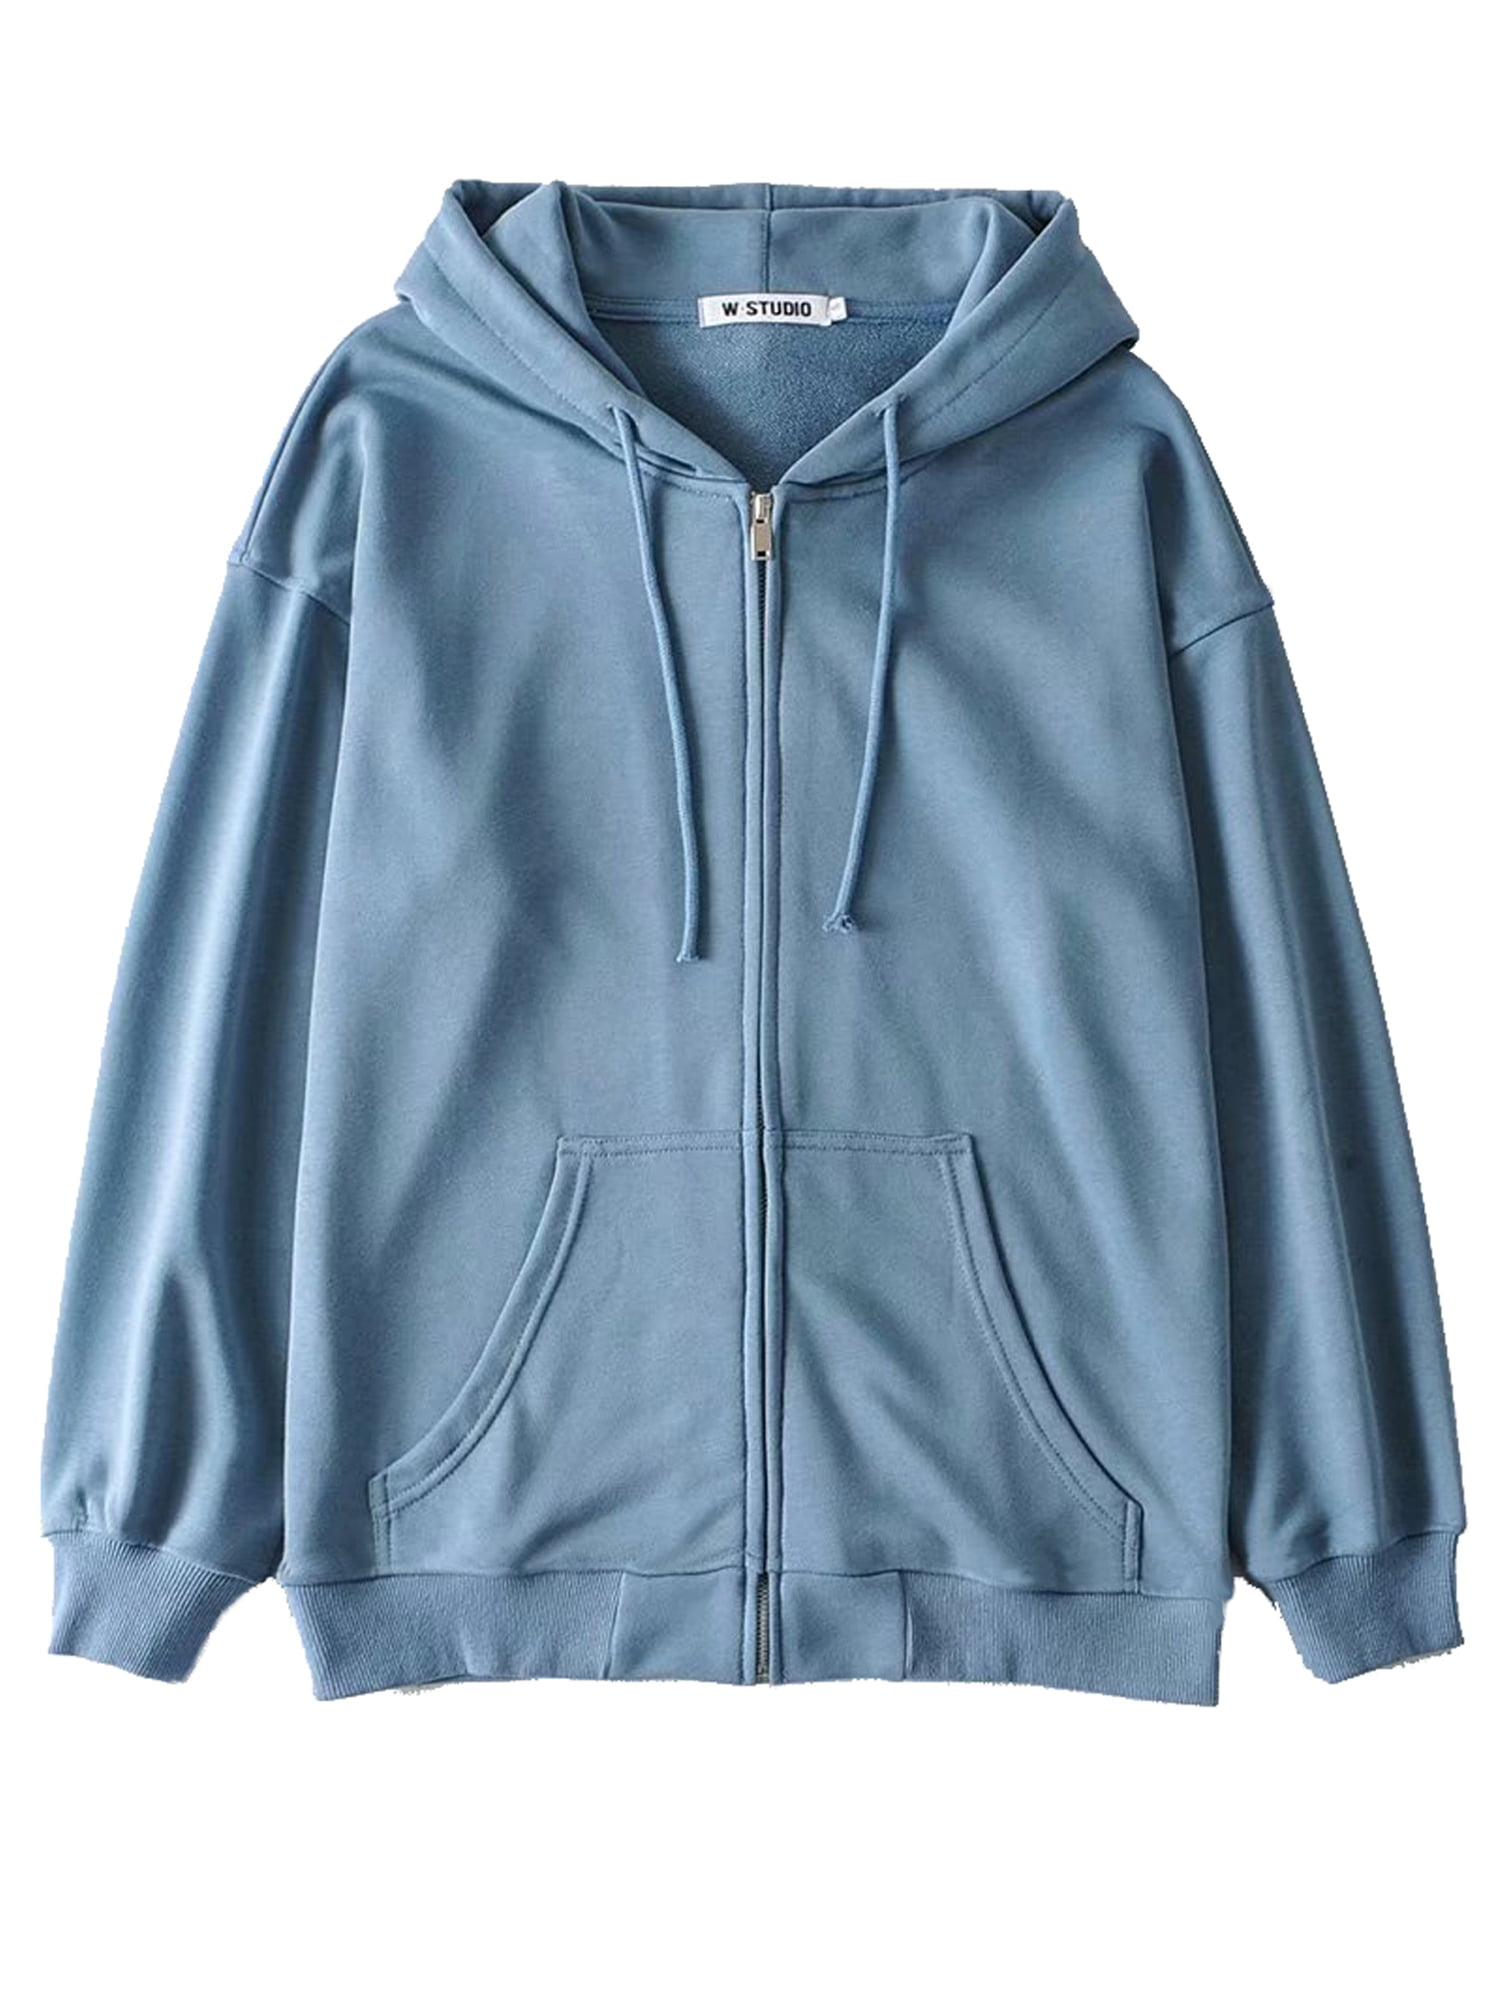 Women Zip-Up Hoodie Long Sleeve Top Oversized Y2K E-girls 90S Solid Color Sweatshirt Jacket Coat cardigan with Pockets